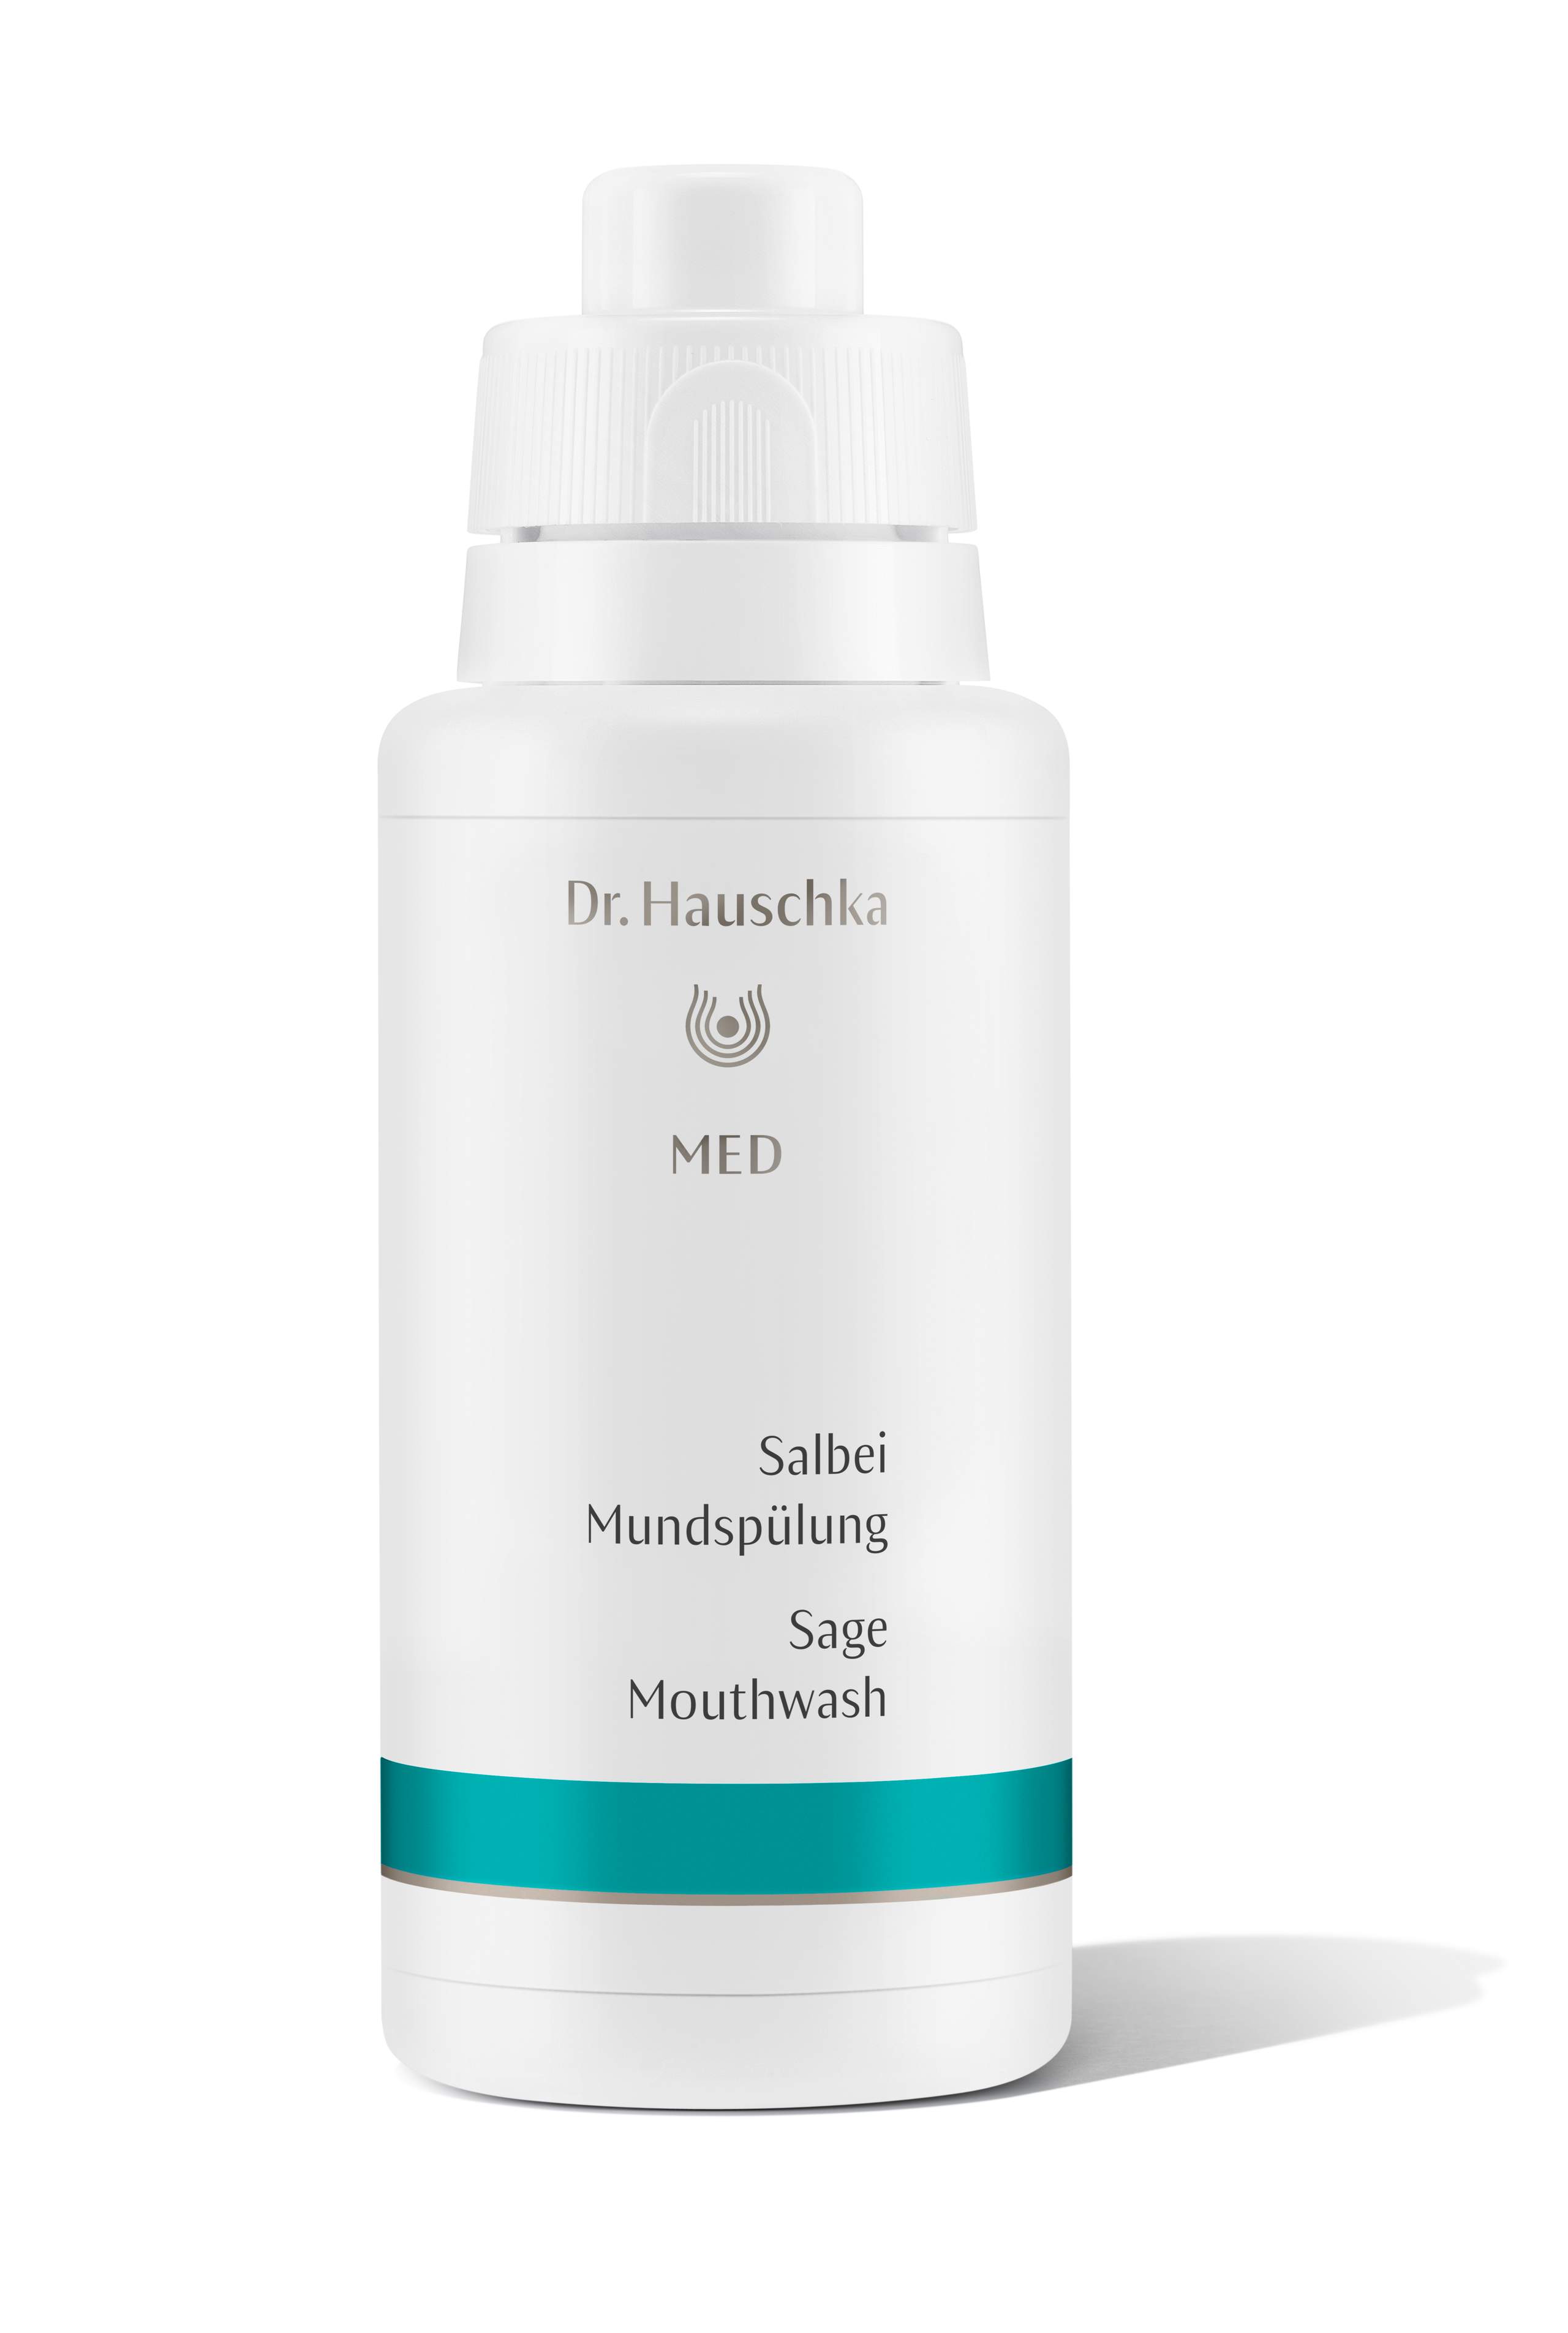 Dr. Hauschka Mundspülung Salbei 300ml